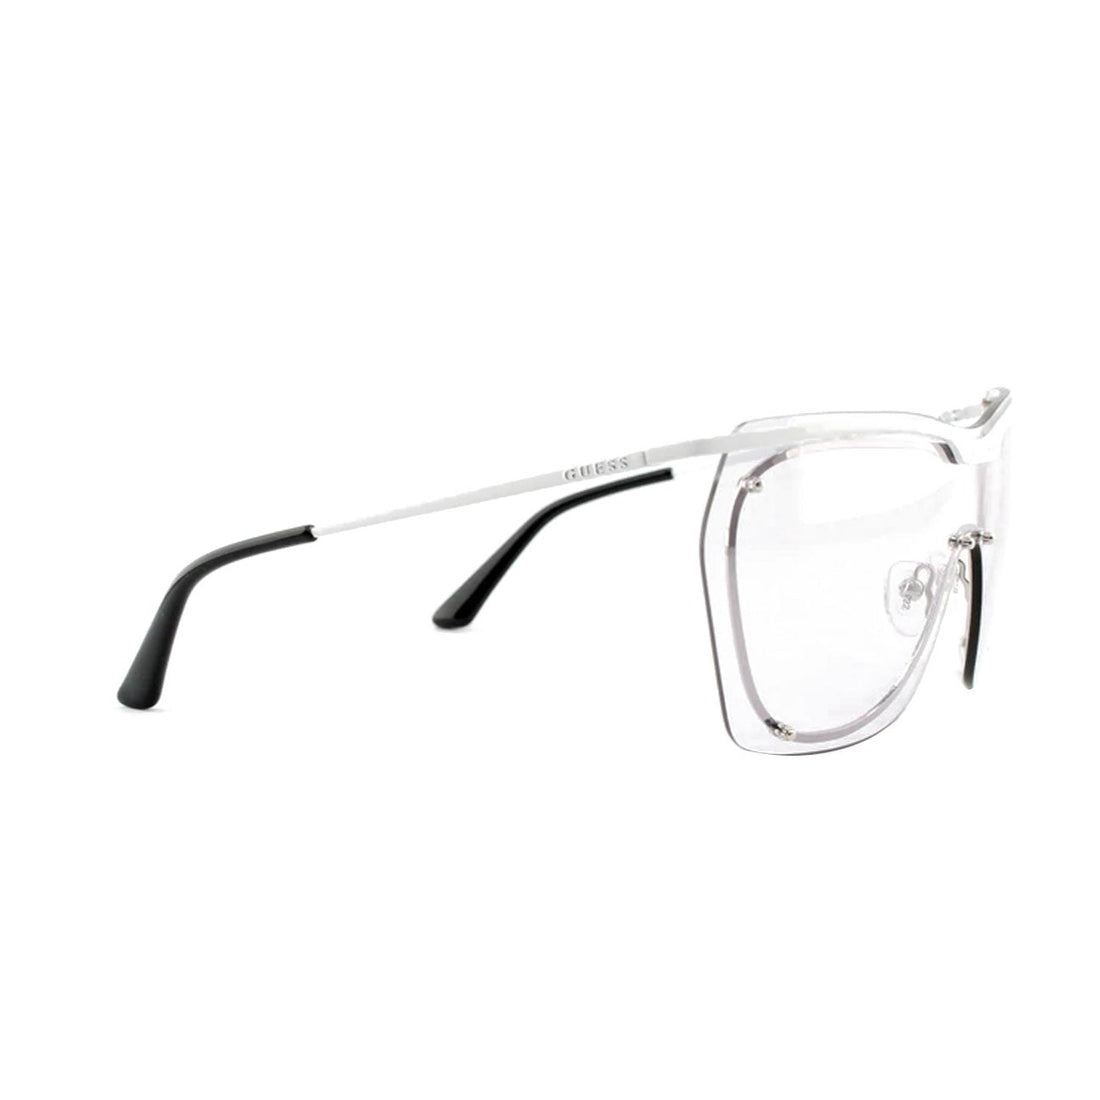 Guess occhiali da sole | Modello GU 7720 - Bianco/Argento